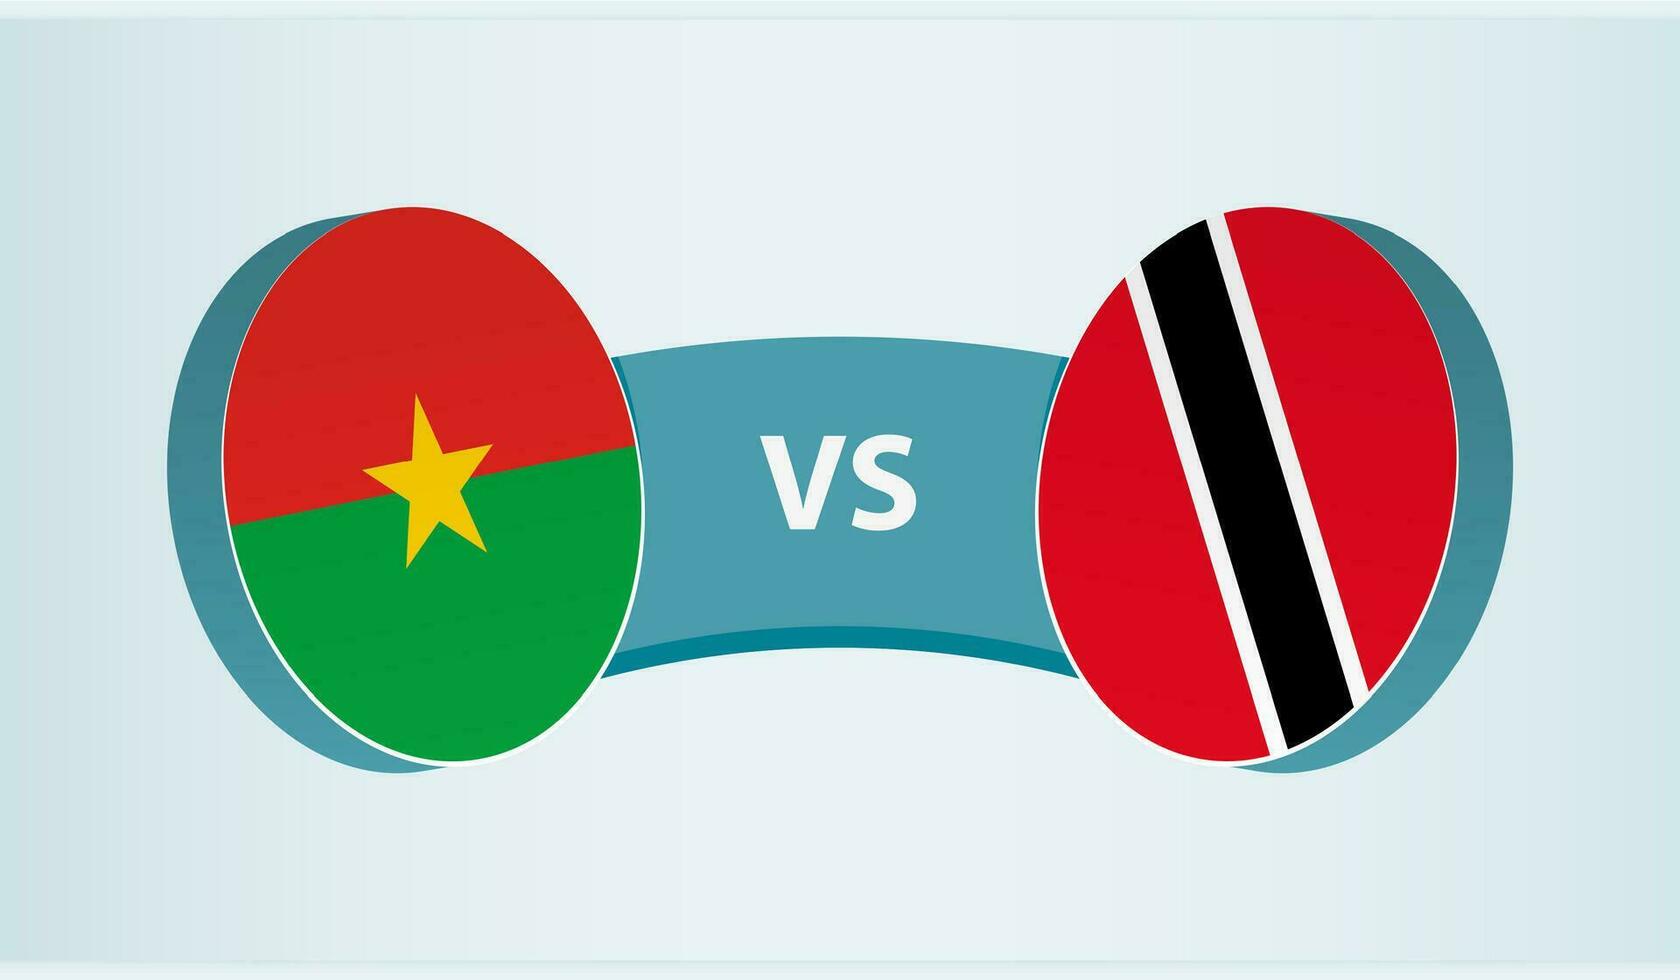 Burkina Faso versus Trinidad and Tobago, team sports competition concept. vector